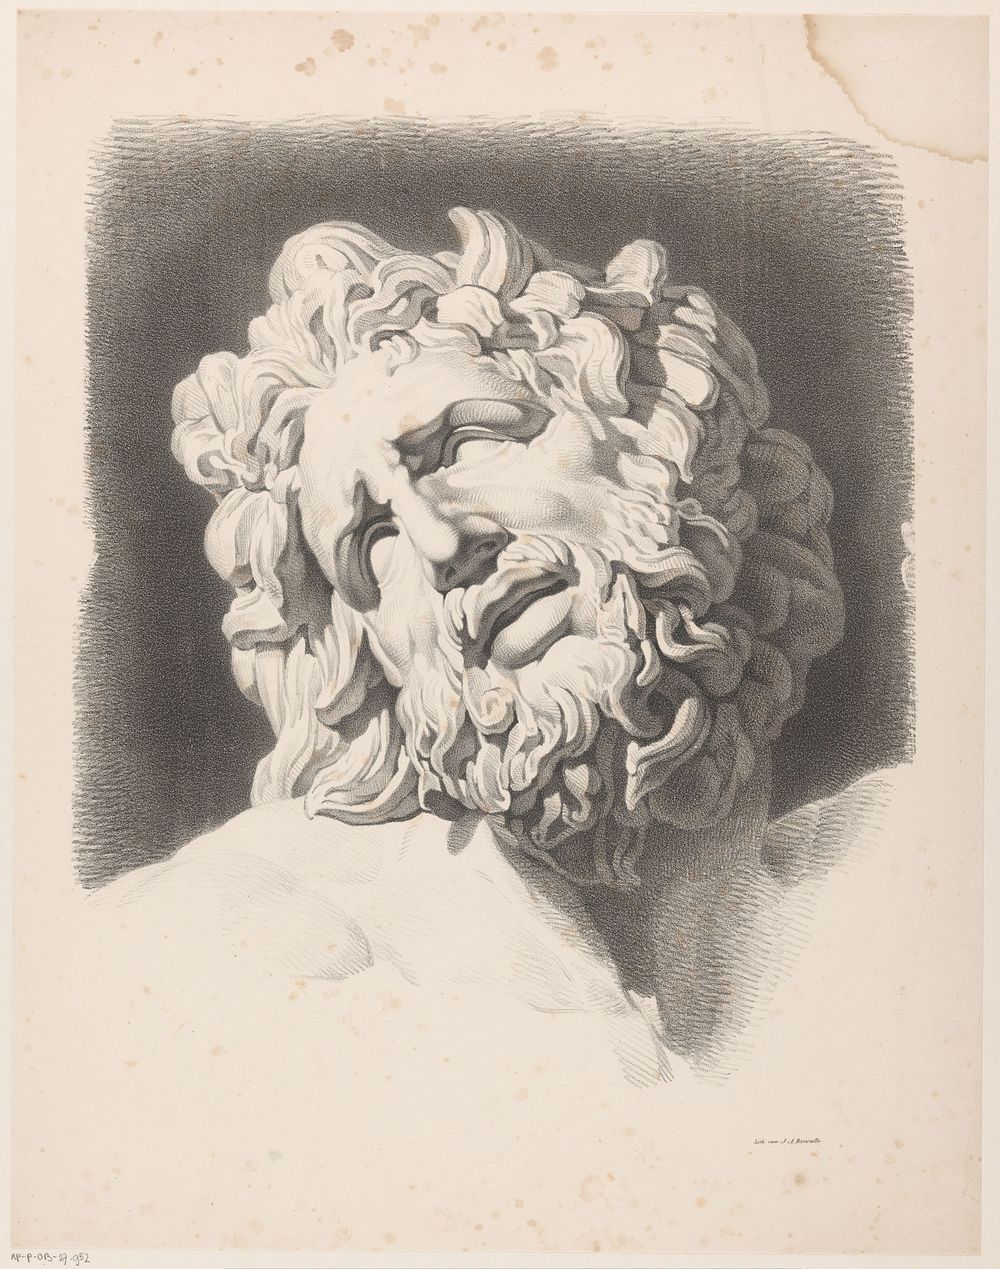 Hoofd van Laocoön (1820 - 1833) by Jean Augustin Daiwaille